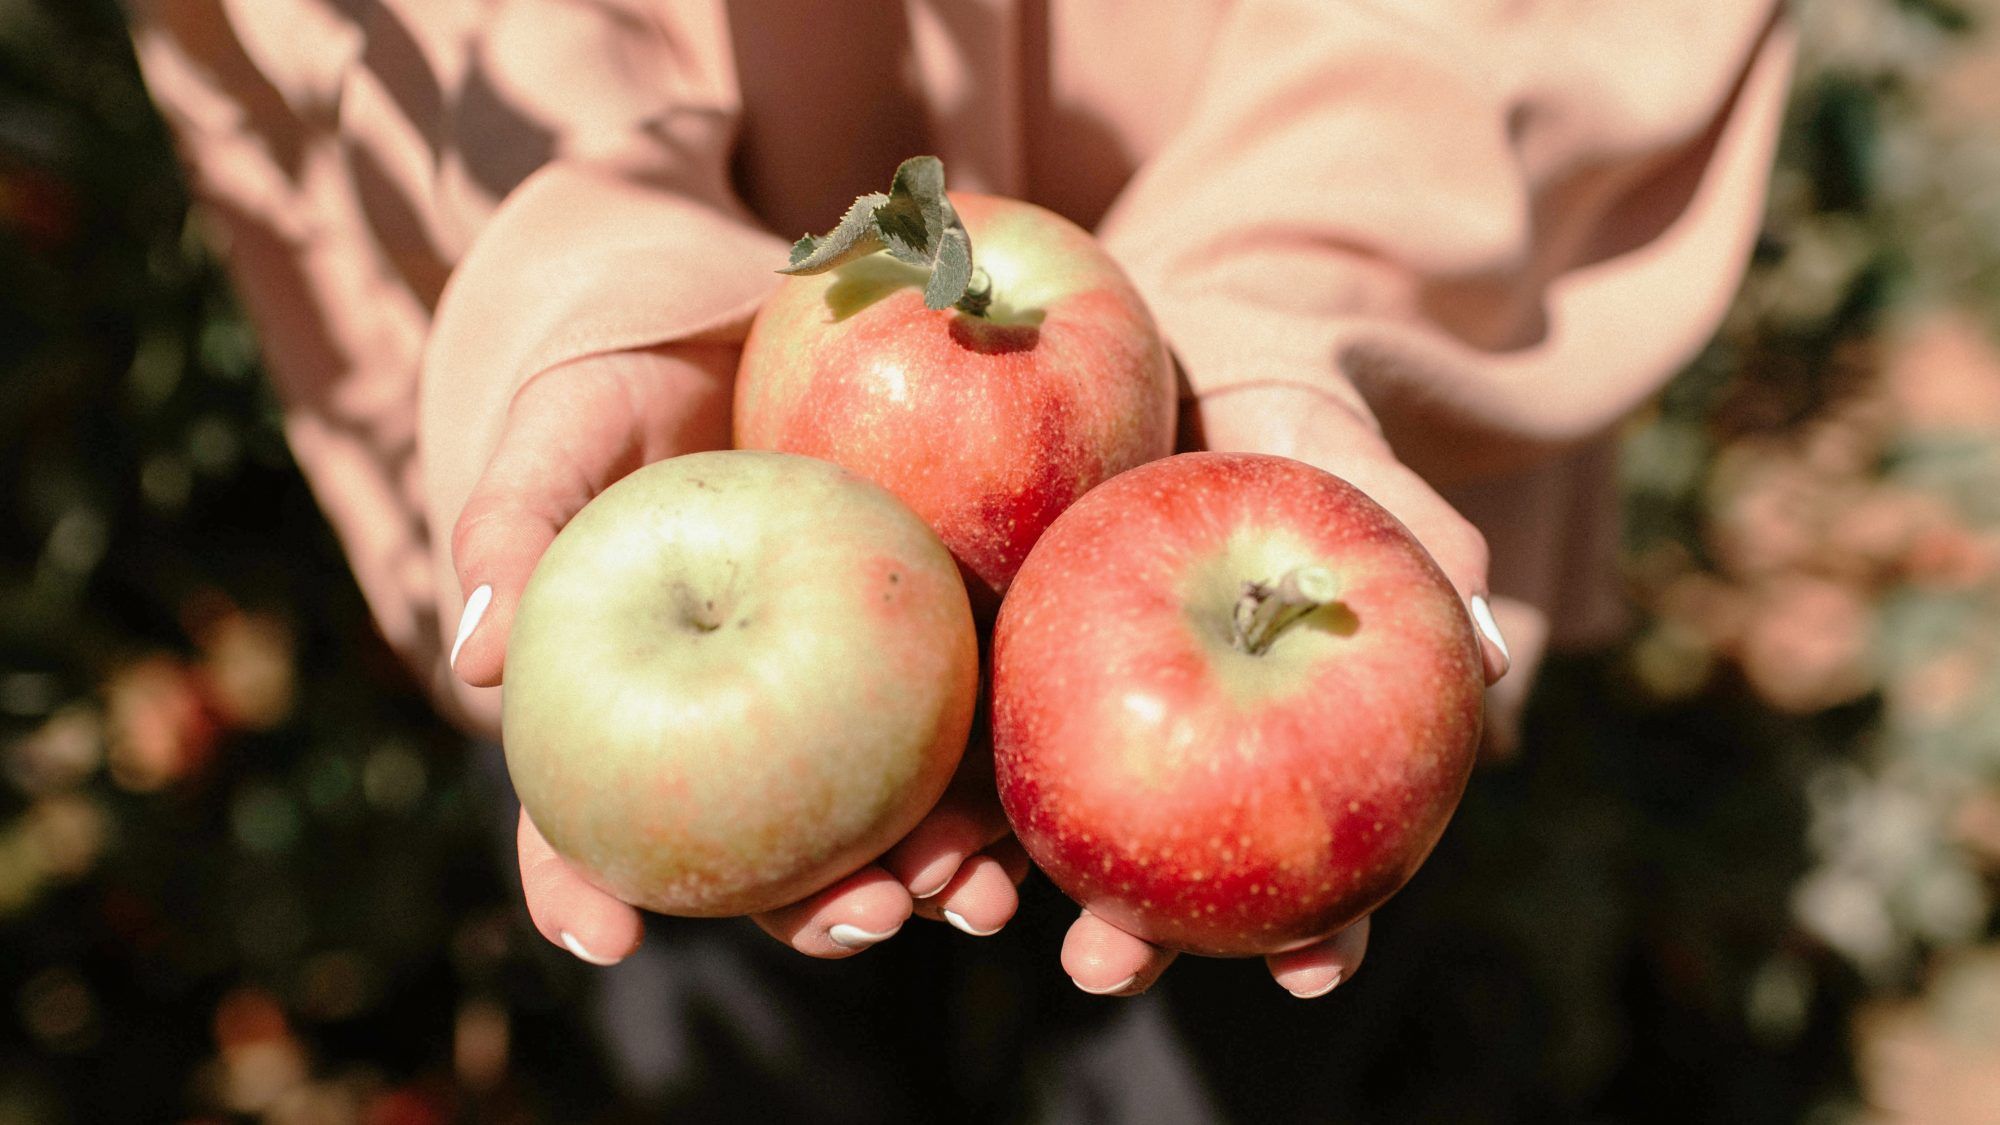 Les 50 meilleurs endroits pour la cueillette de pommes aux États-Unis, selon Yelp